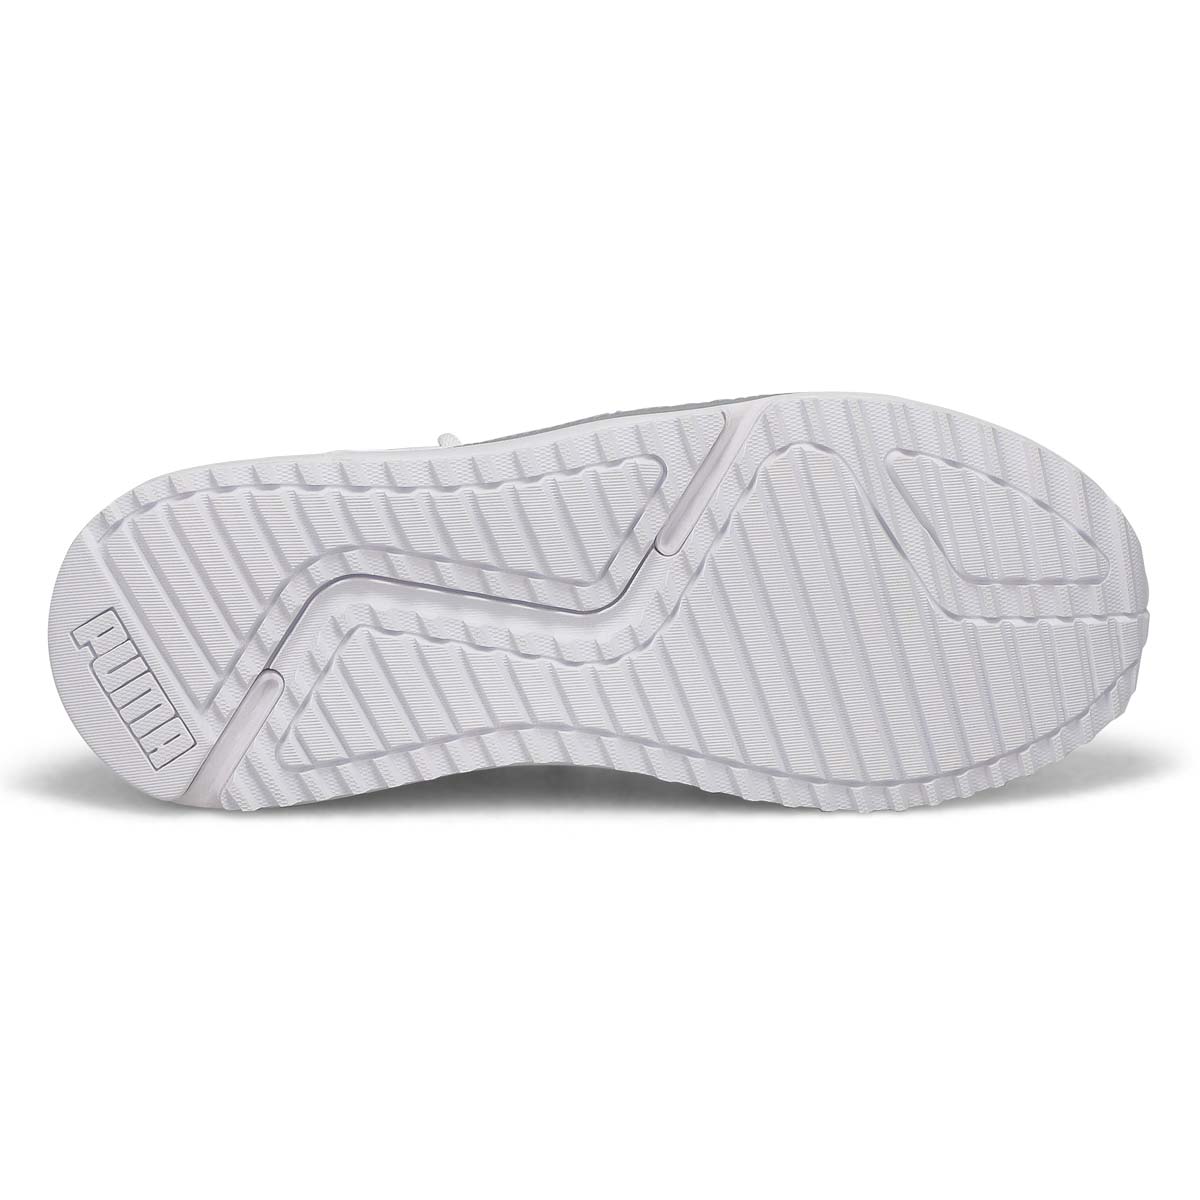 Women's Pacer Future Allure Sneaker - White/Silver